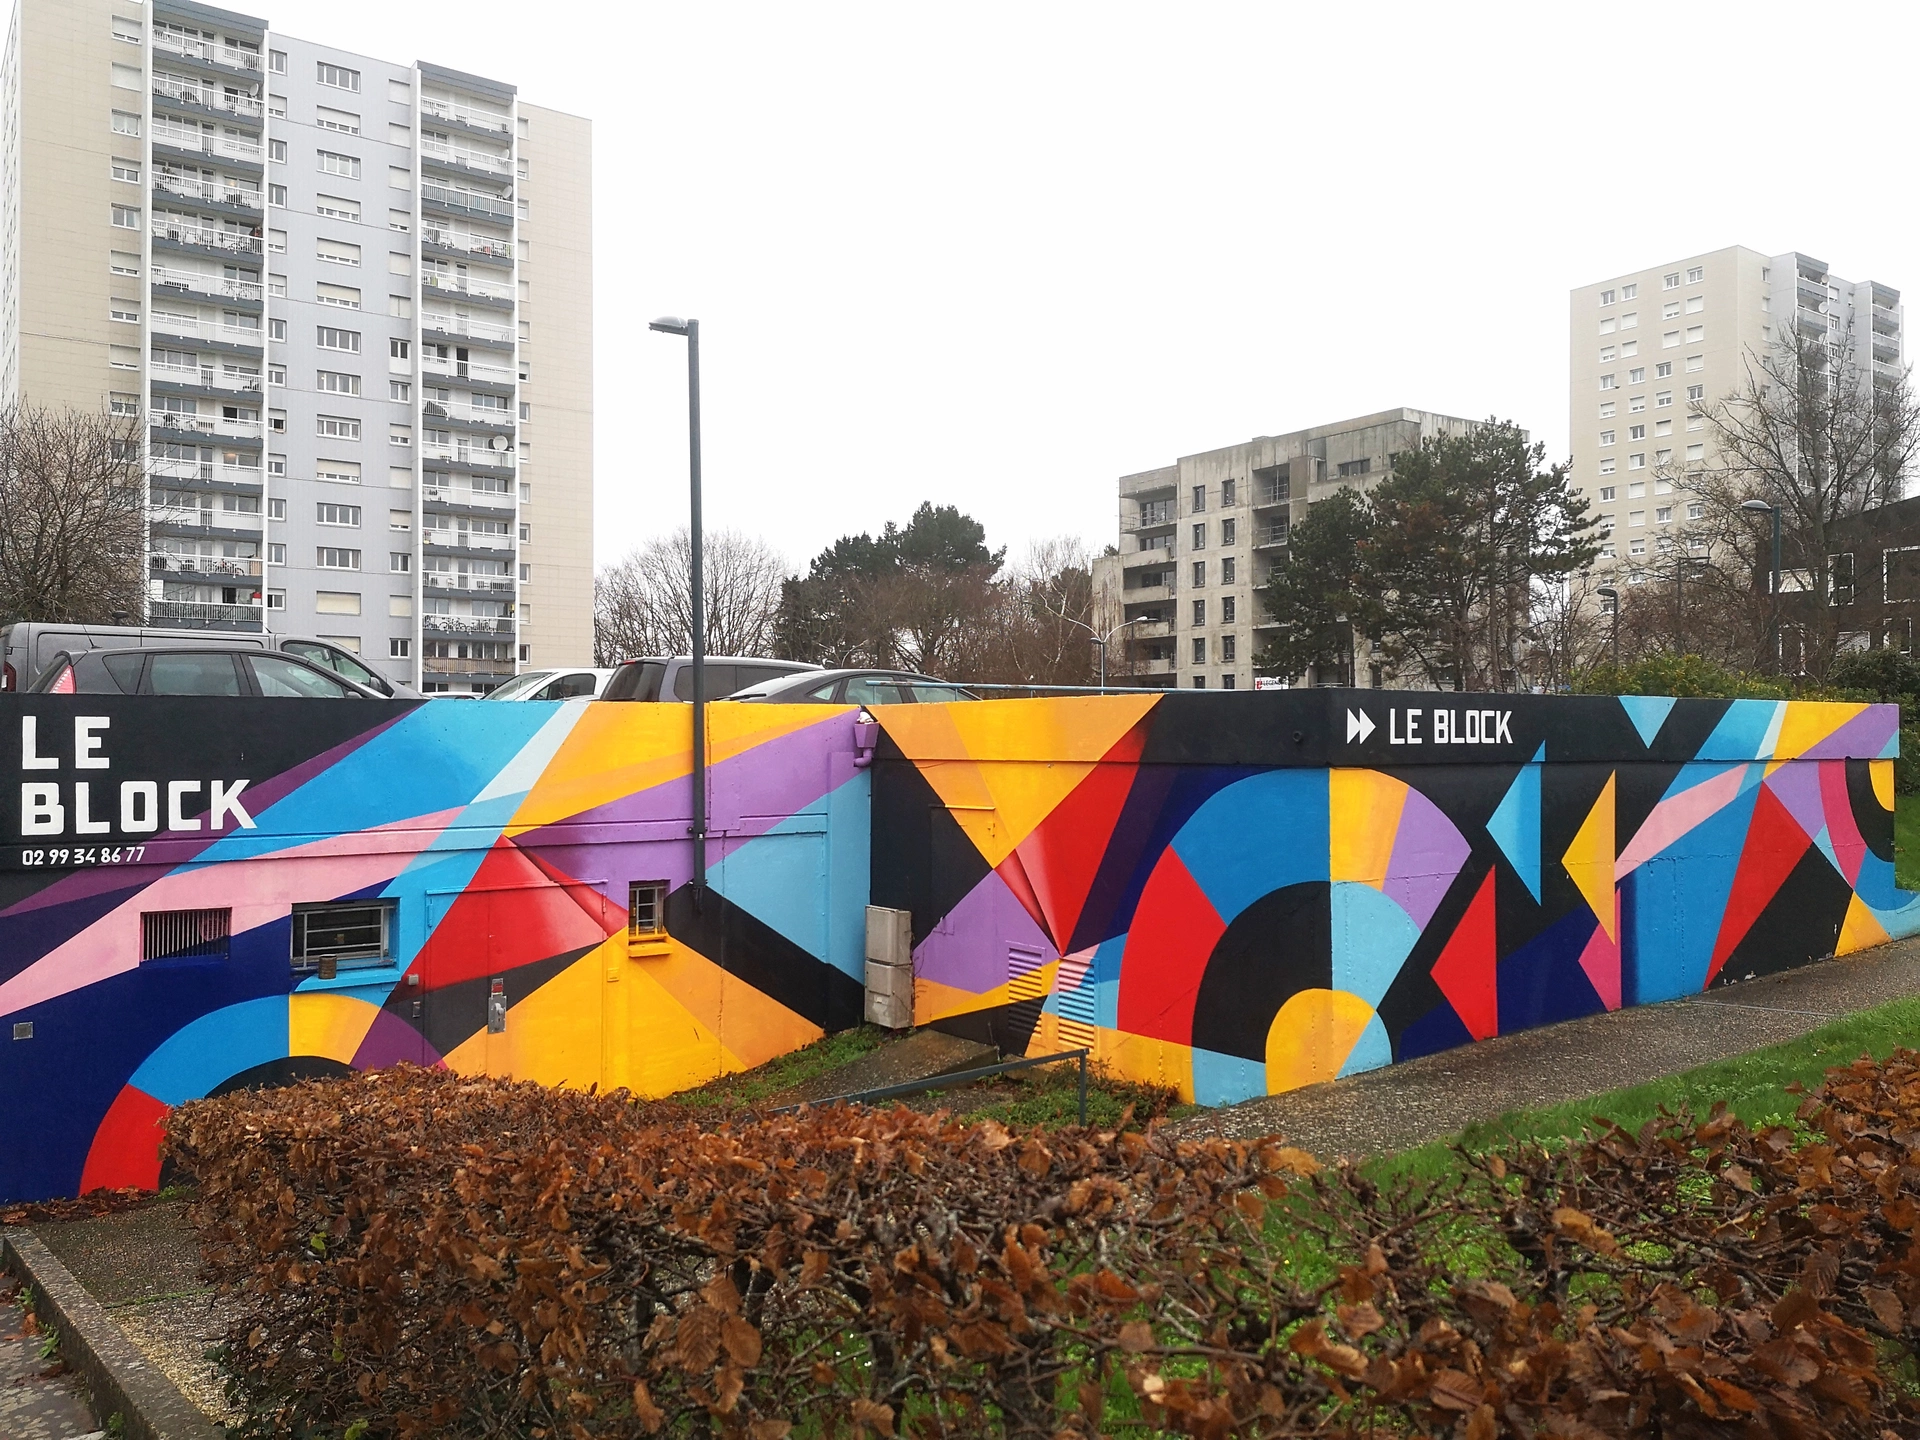 Oeuvre de Street Art à Rennes